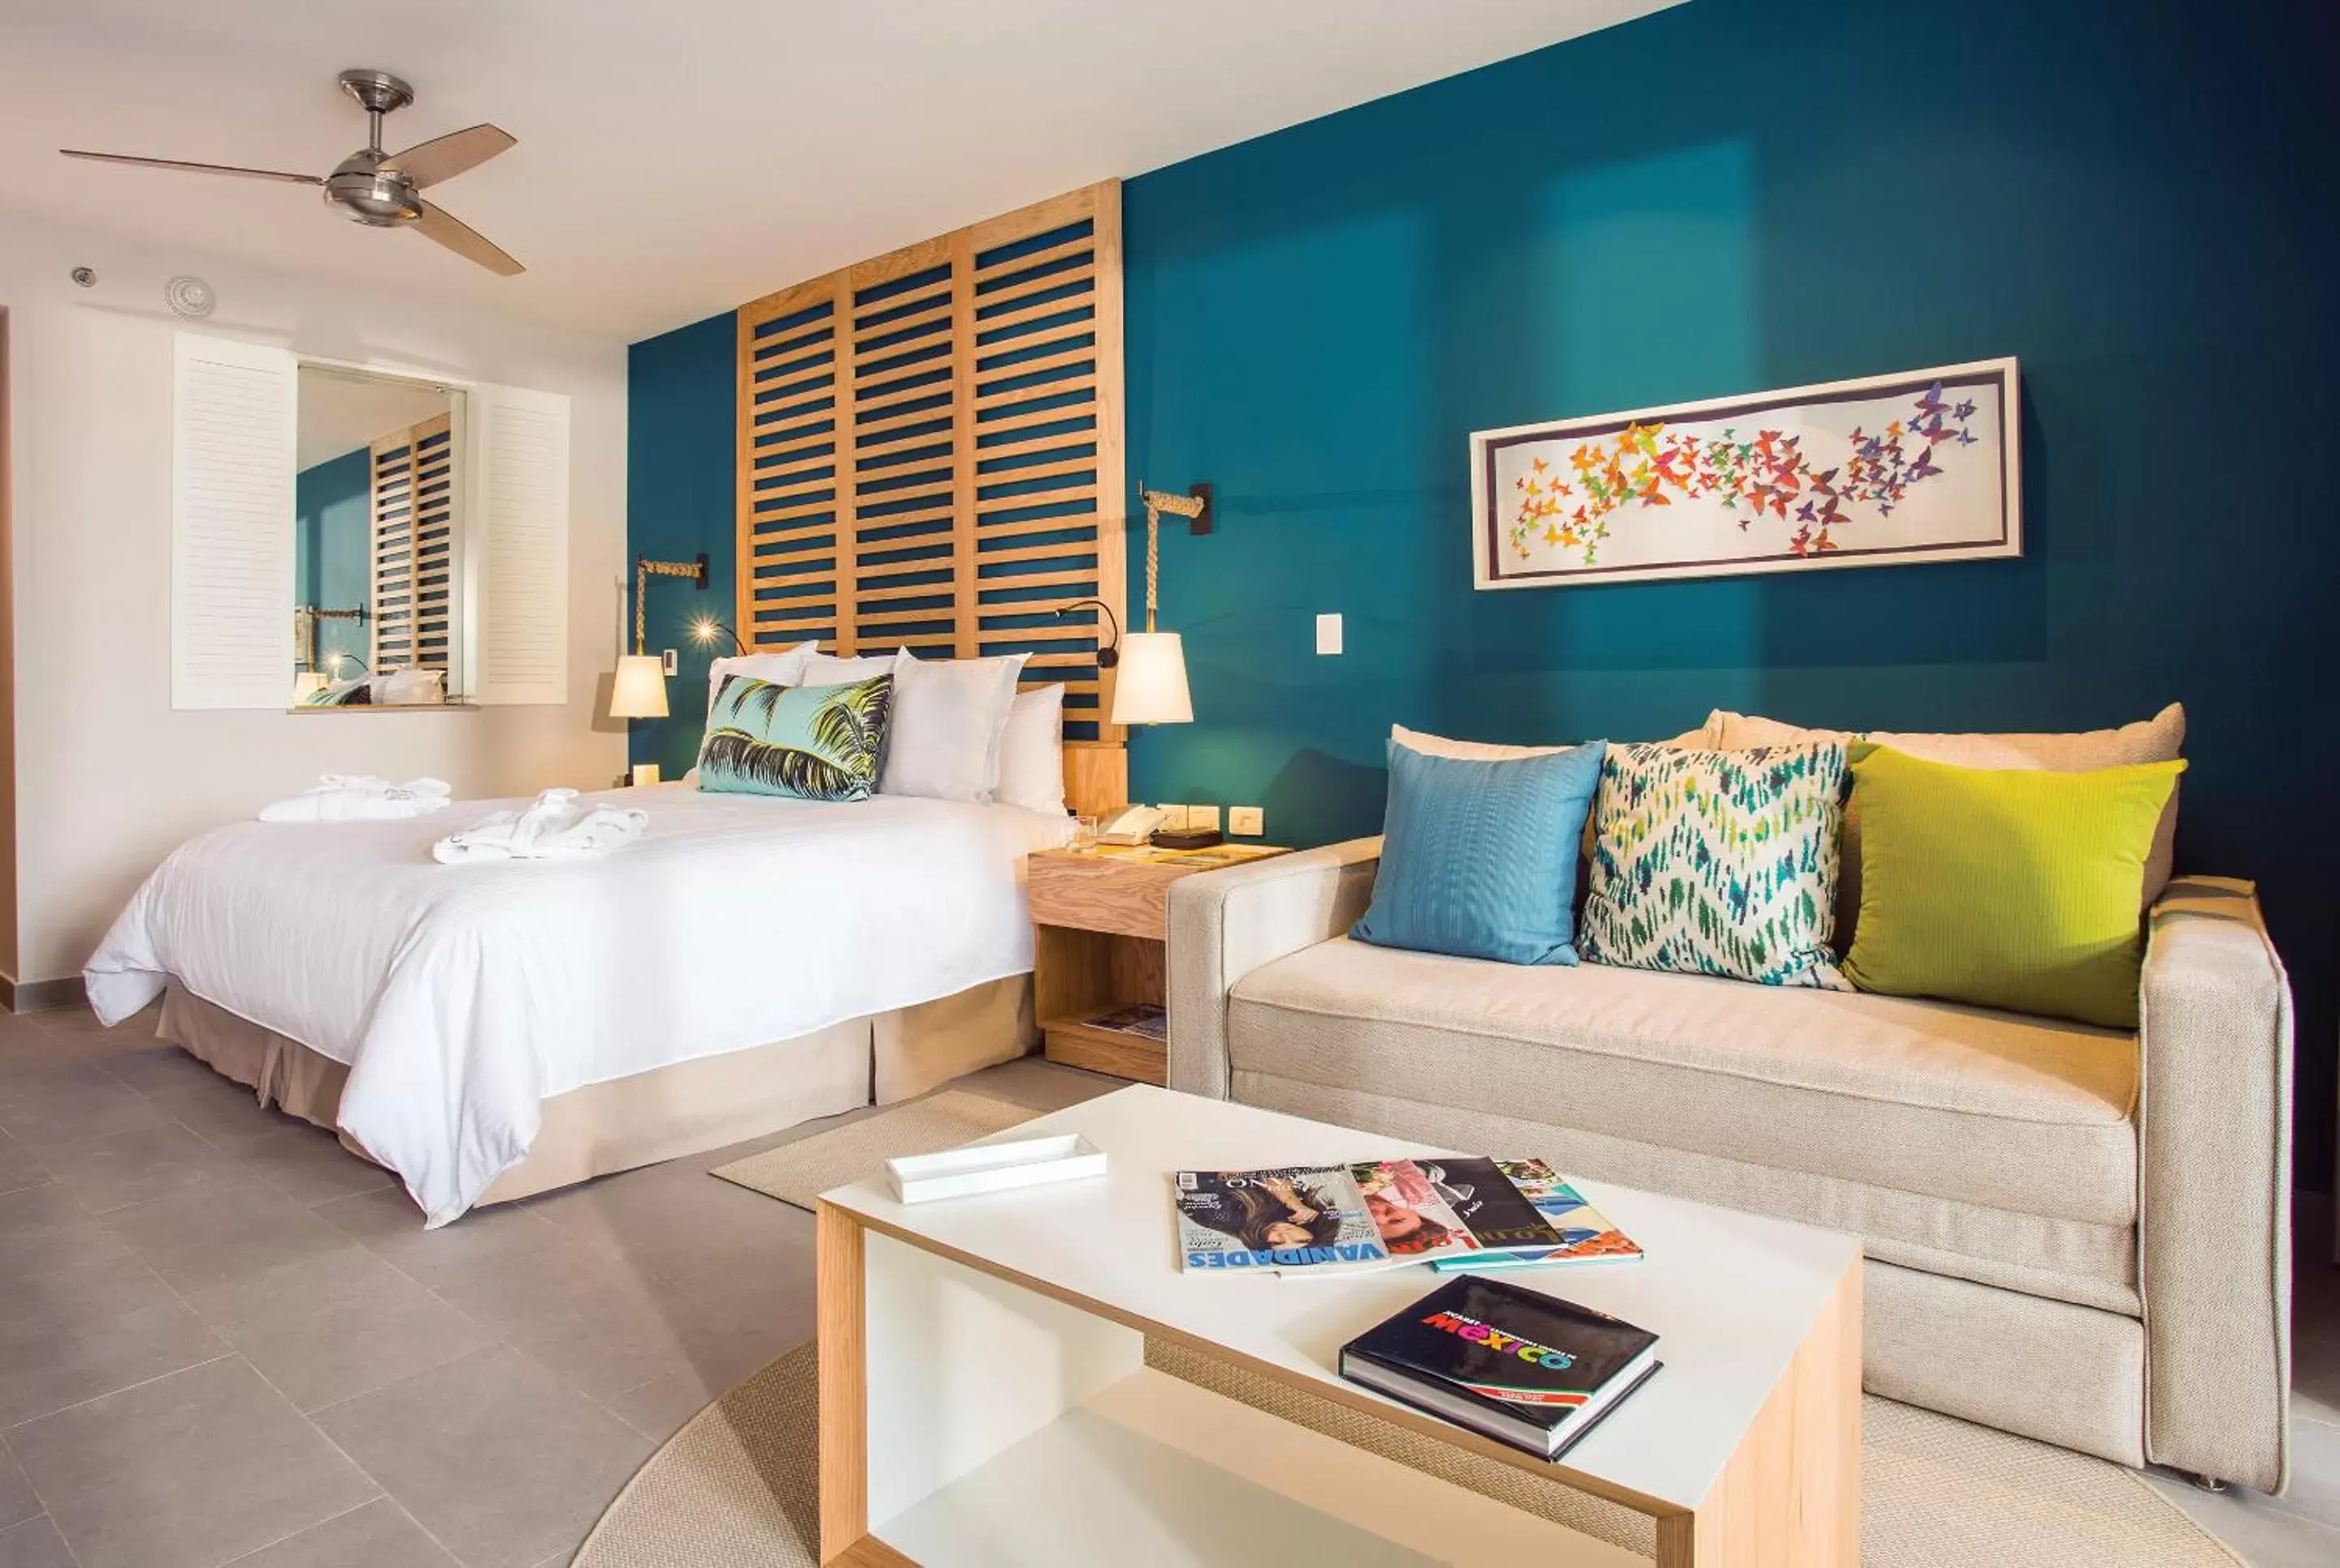 Bed in Dreams Natura Resort & Spa - All Inclusive